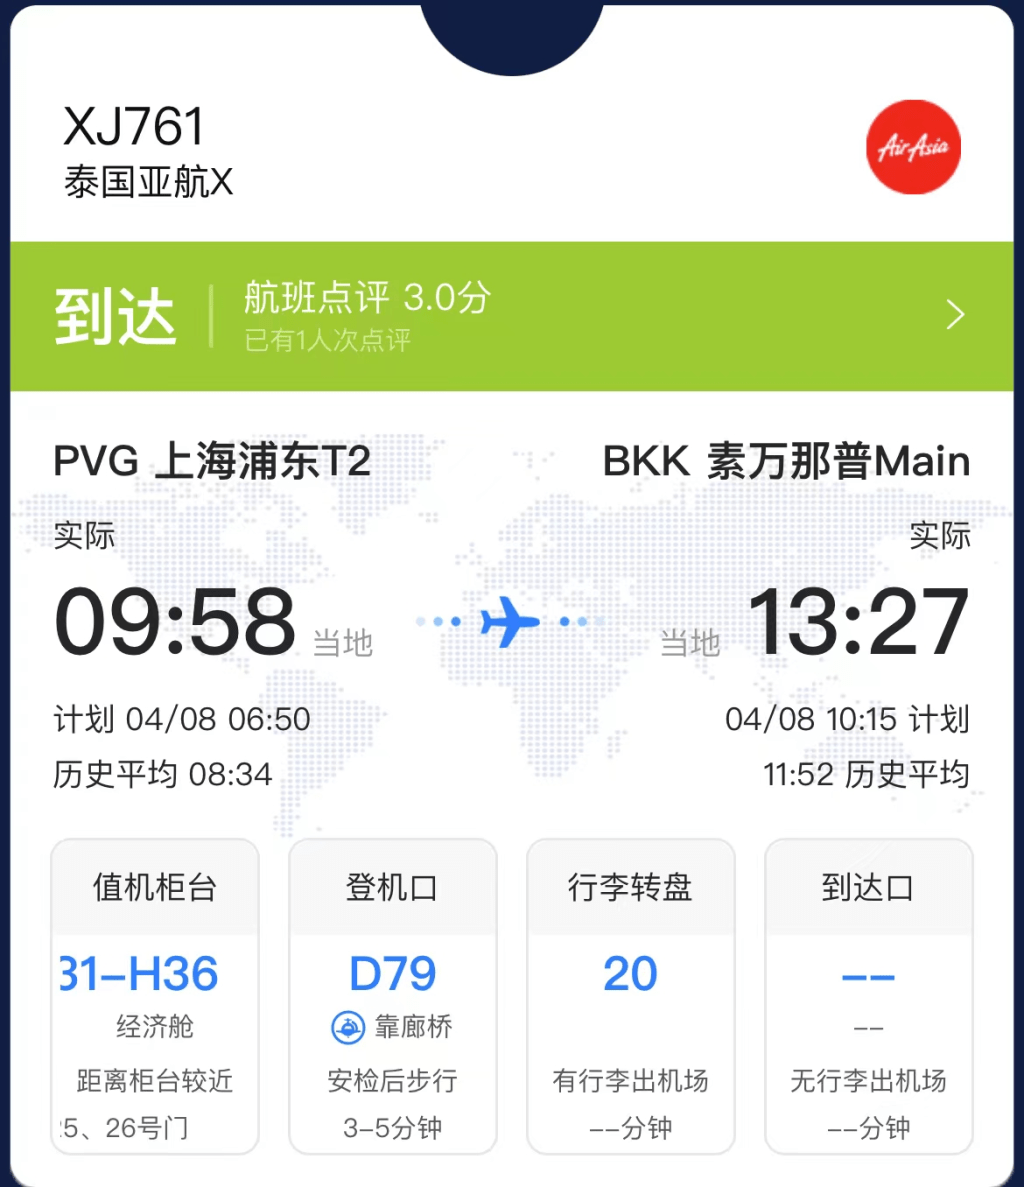 上海机场职员承认航班昨日确实有起飞延误。